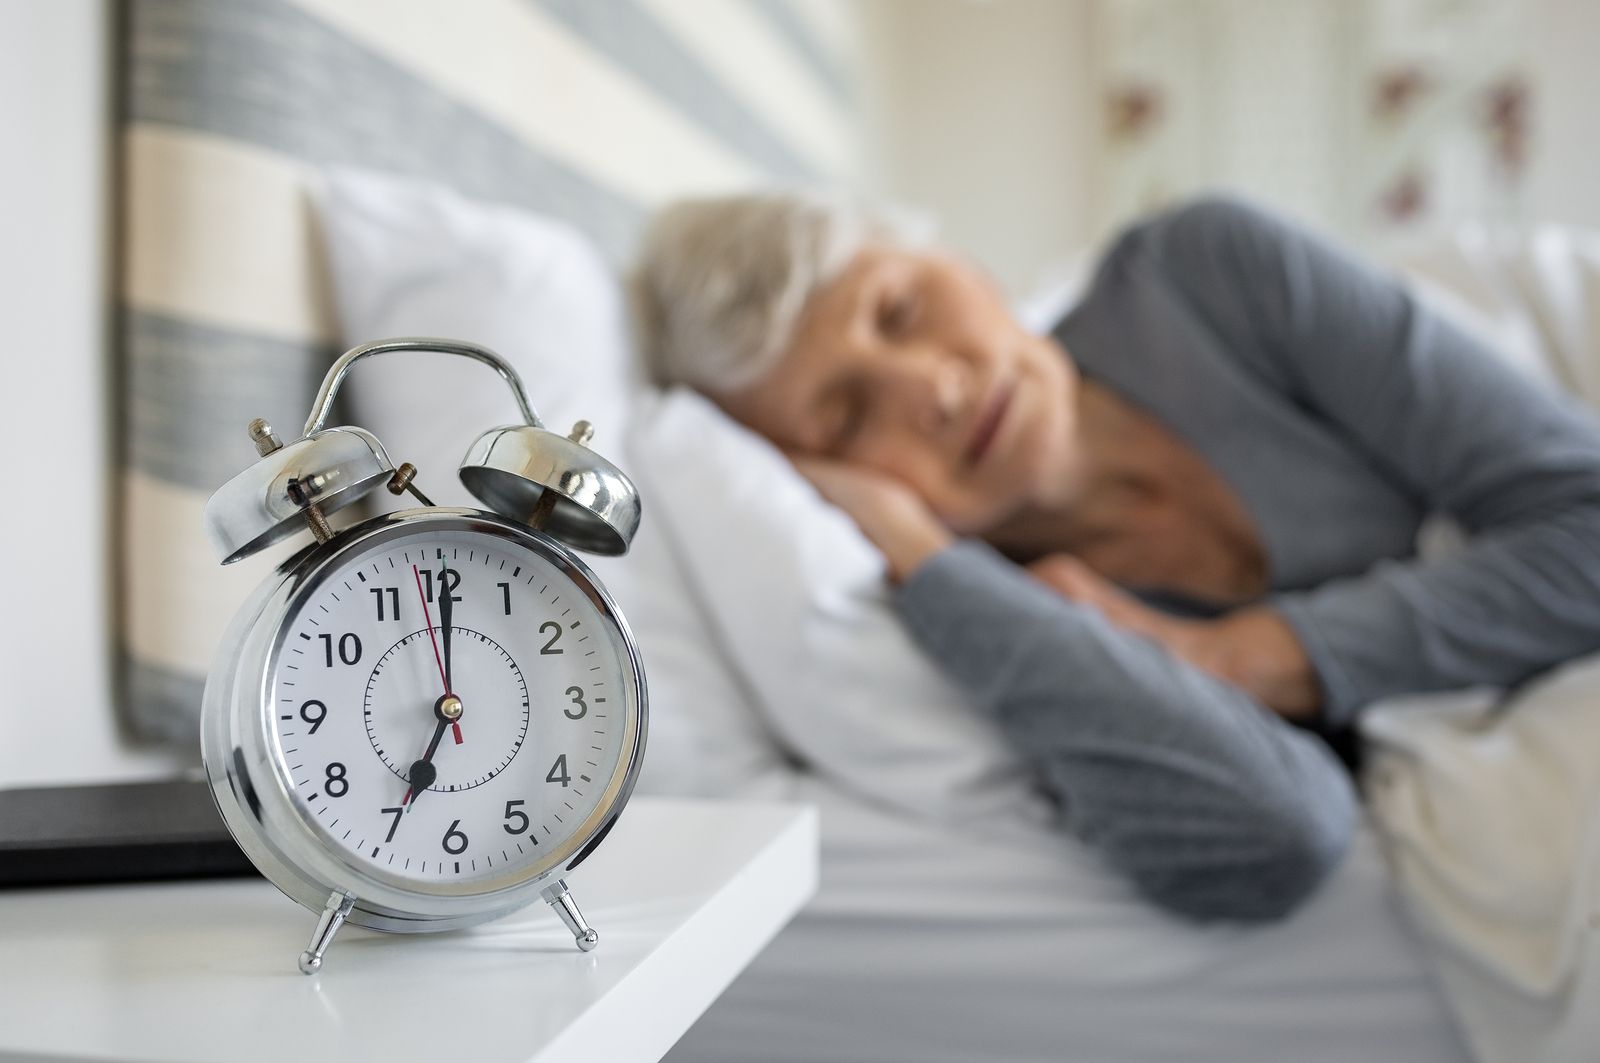 Dormir poco es peligroso para la salud cardiovascular